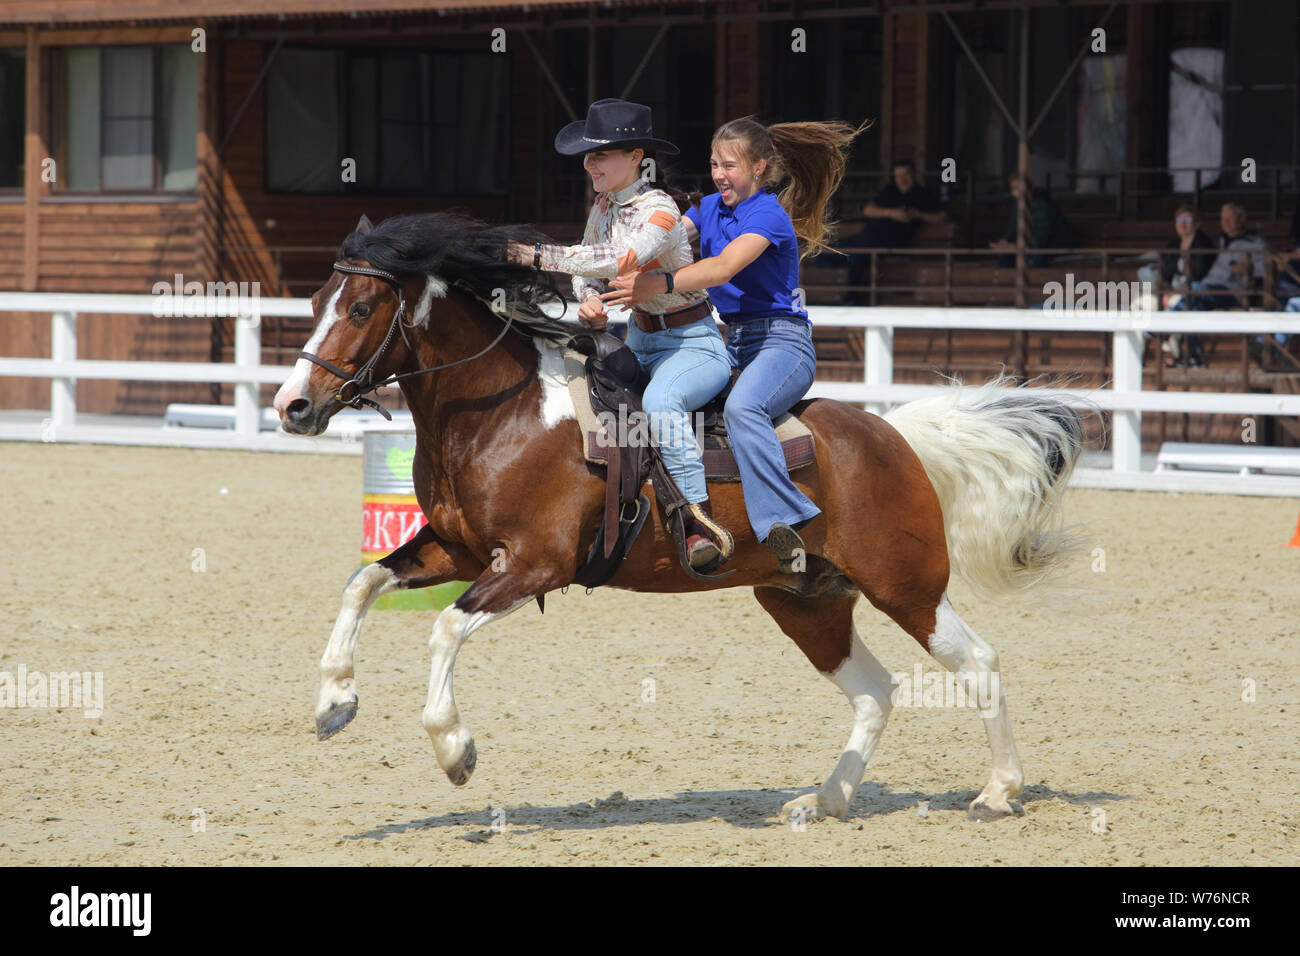 Region Moskau, Russland, Juli 19-21, 2019, II International Equestrian Festival' Ivanovo Feld': Cowgirl während der Frauen Barrel Racing Wettbewerb Stockfoto